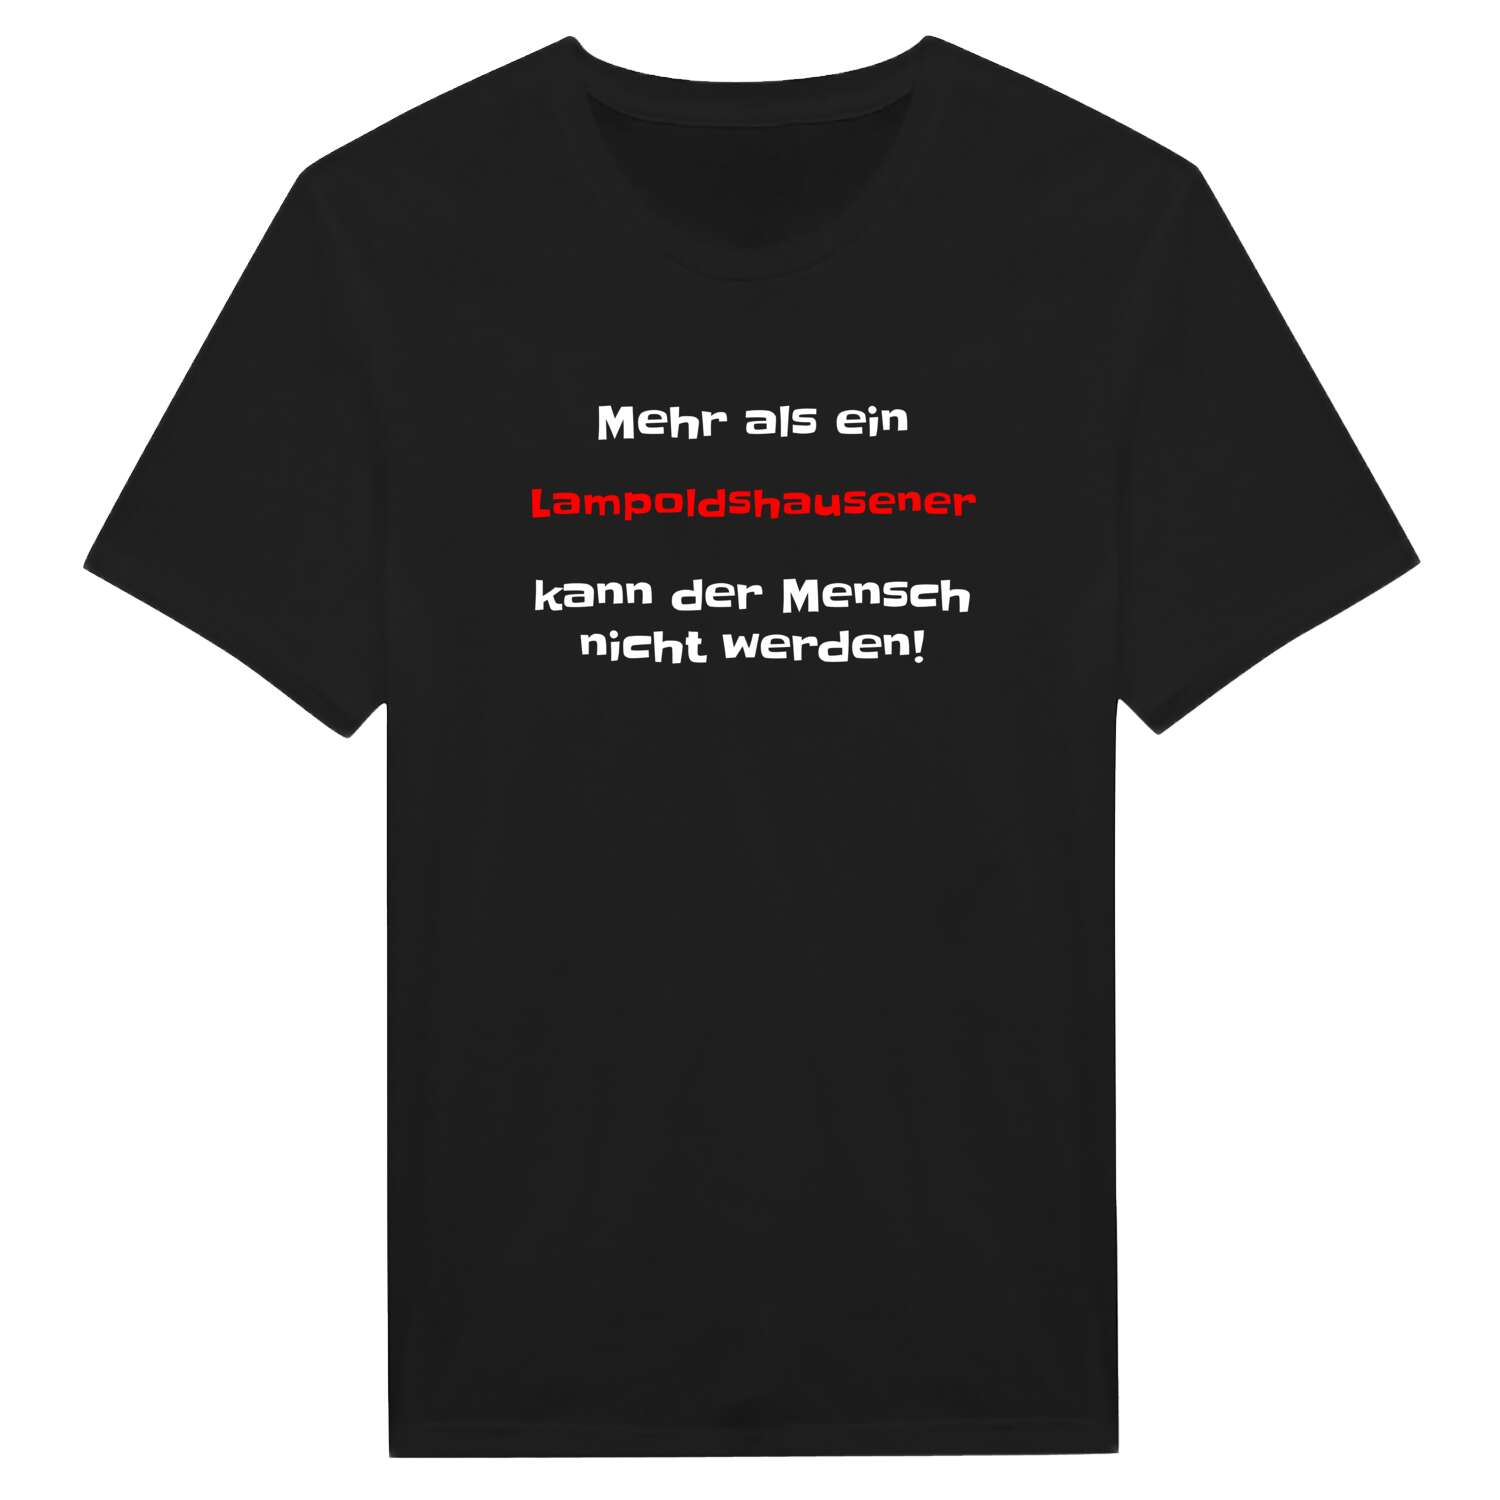 Lampoldshausen T-Shirt »Mehr als ein«